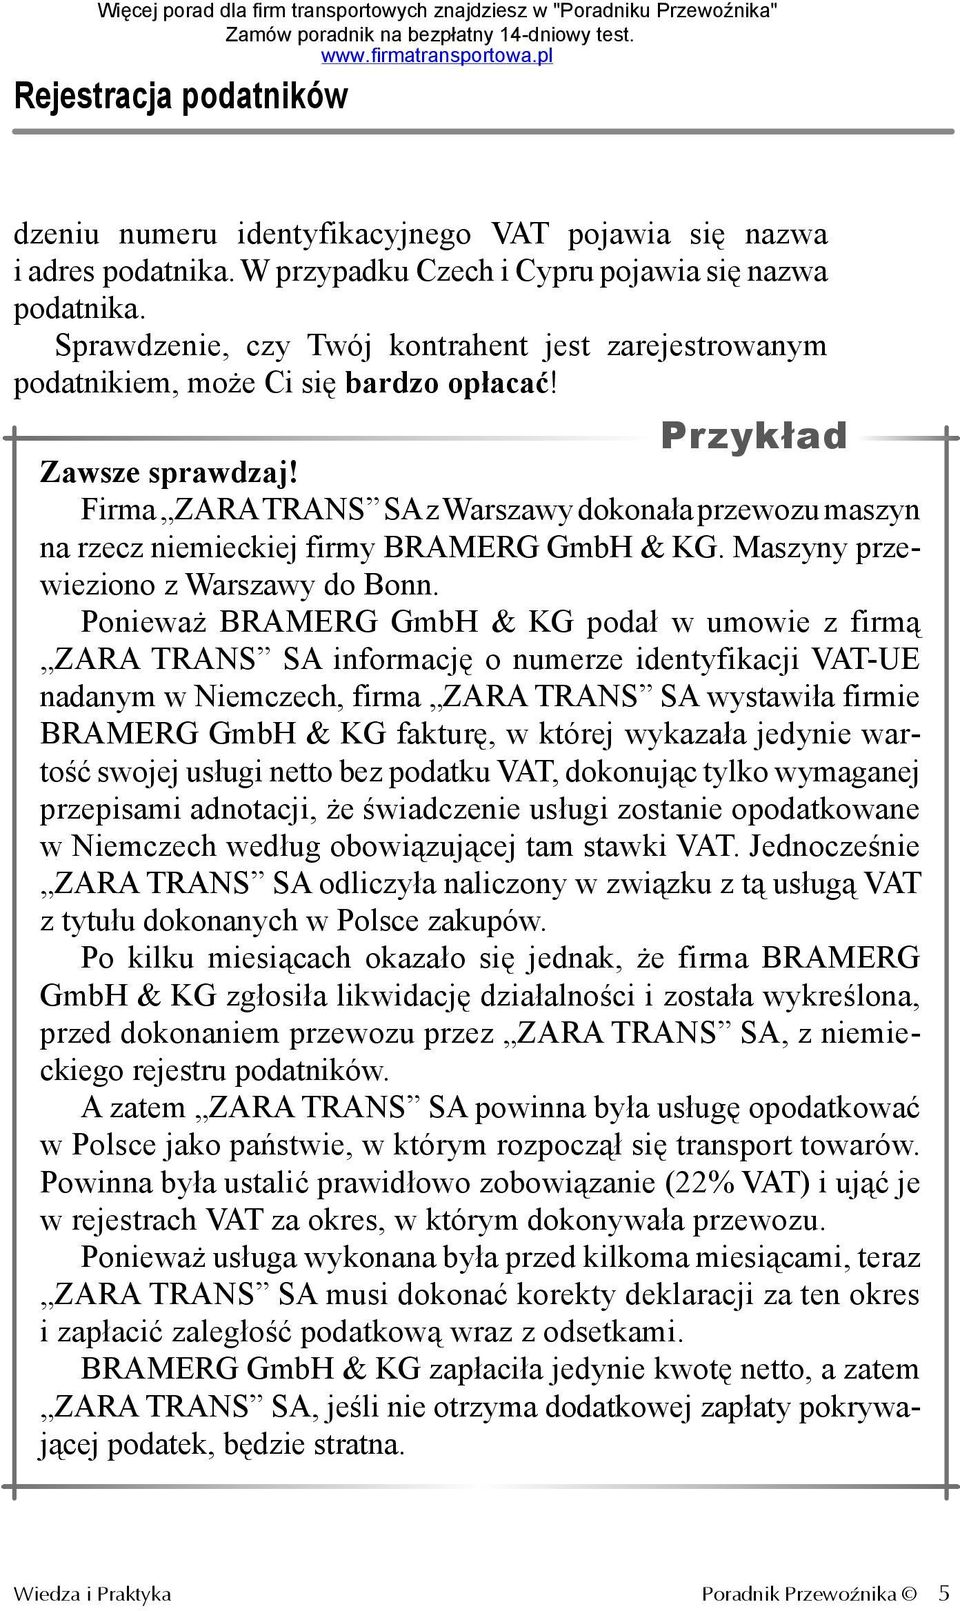 Firma ZARA TRANS SA z Warszawy dokonała przewozu maszyn na rzecz niemieckiej firmy BRAMERG GmbH & KG. Maszyny przewieziono z Warszawy do Bonn.